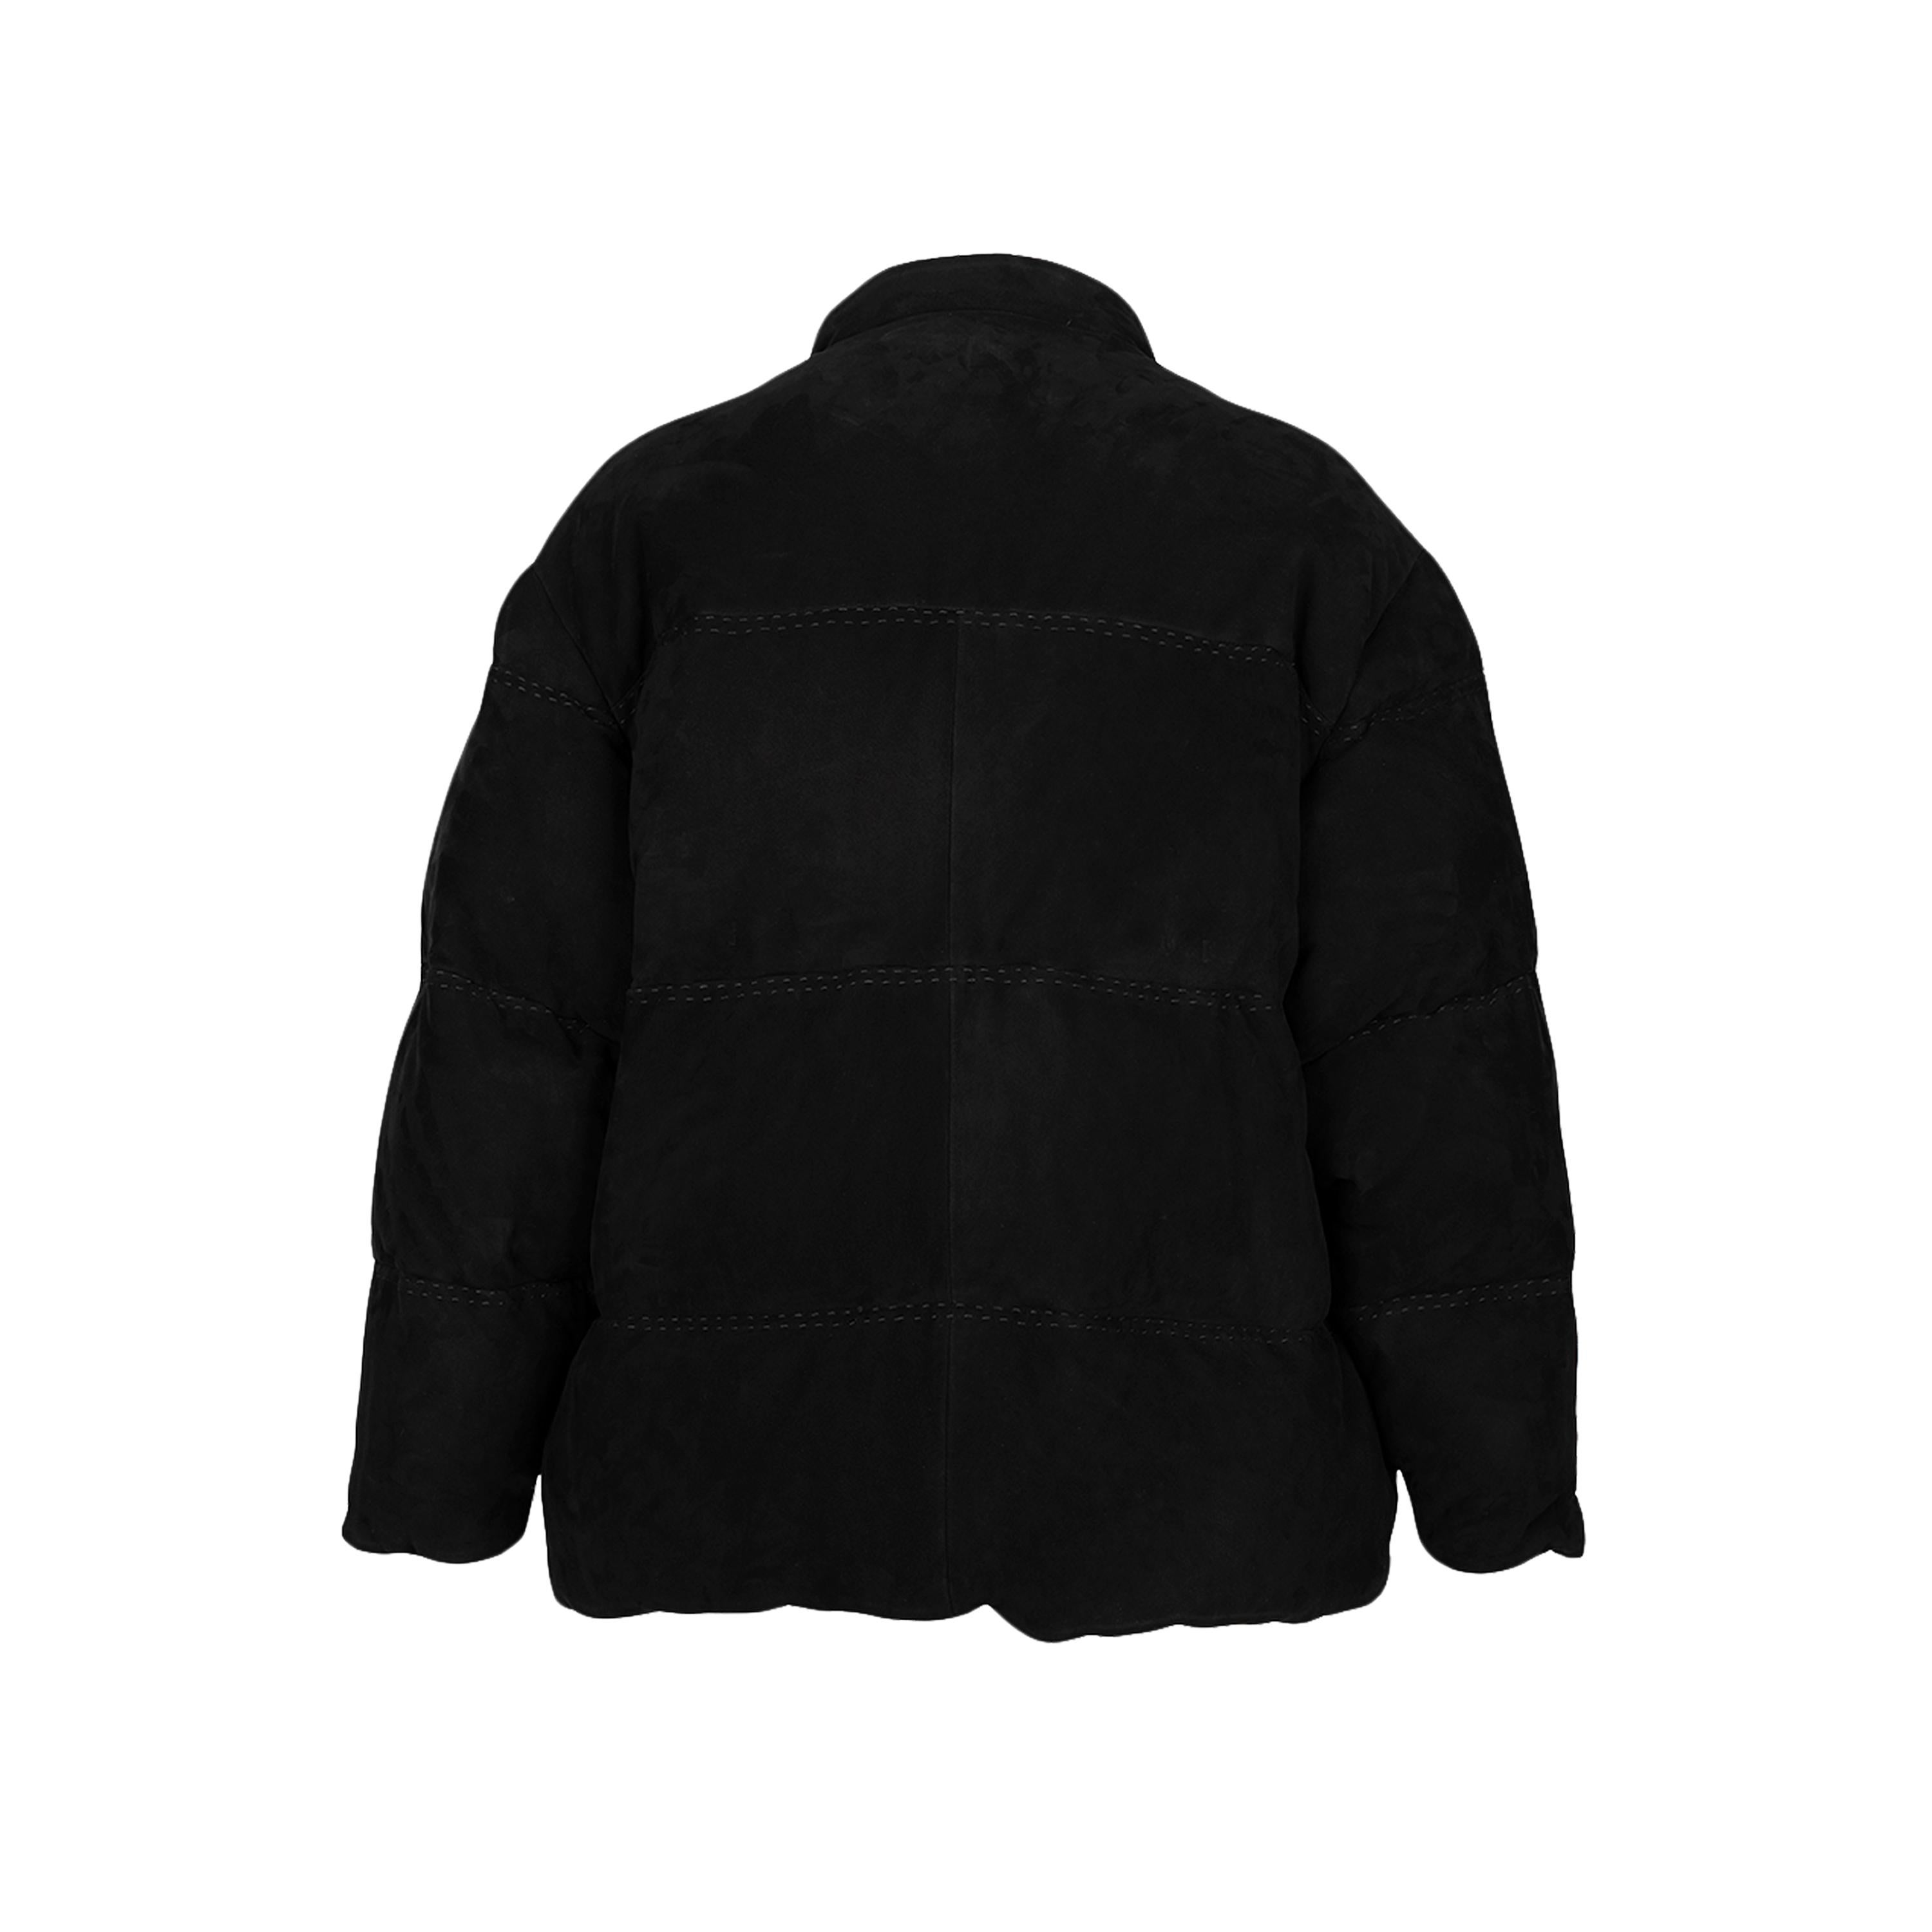 Manteau bouffant en daim noir Hermès agrémenté d'une doublure imprimée, manches longues, fermeture par boutons, bandes matelassées.